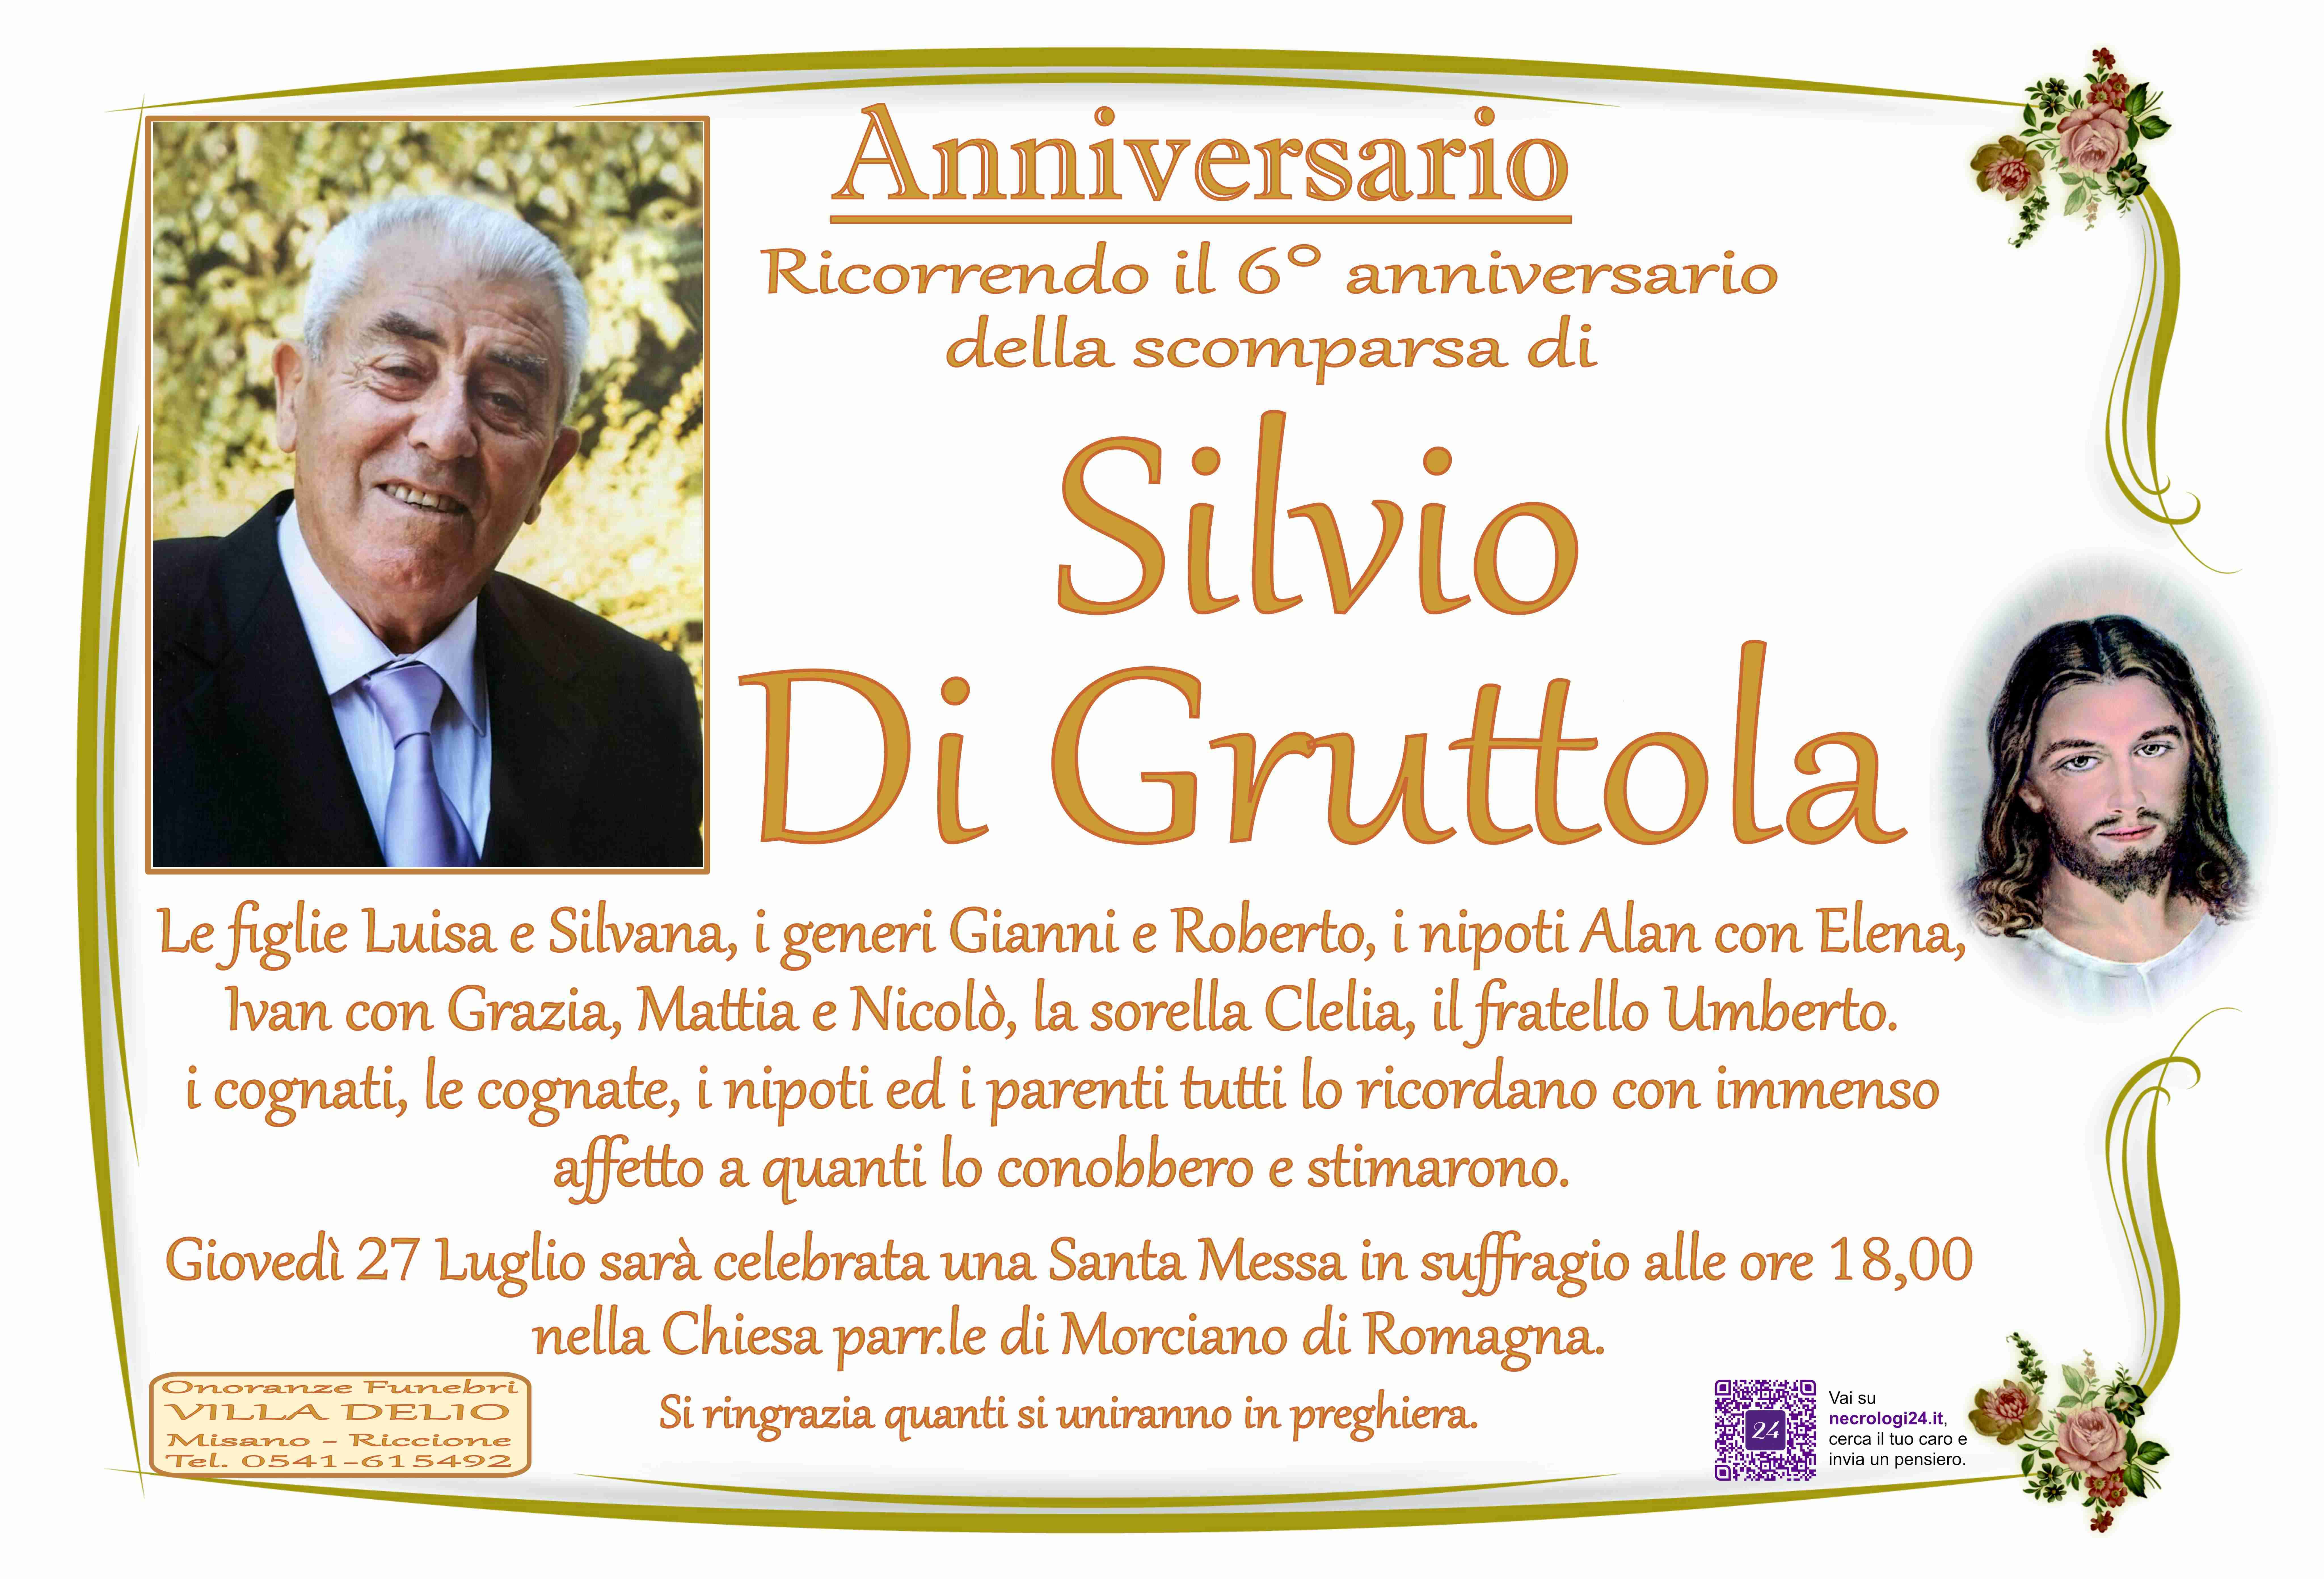 Silvio Di Gruttola